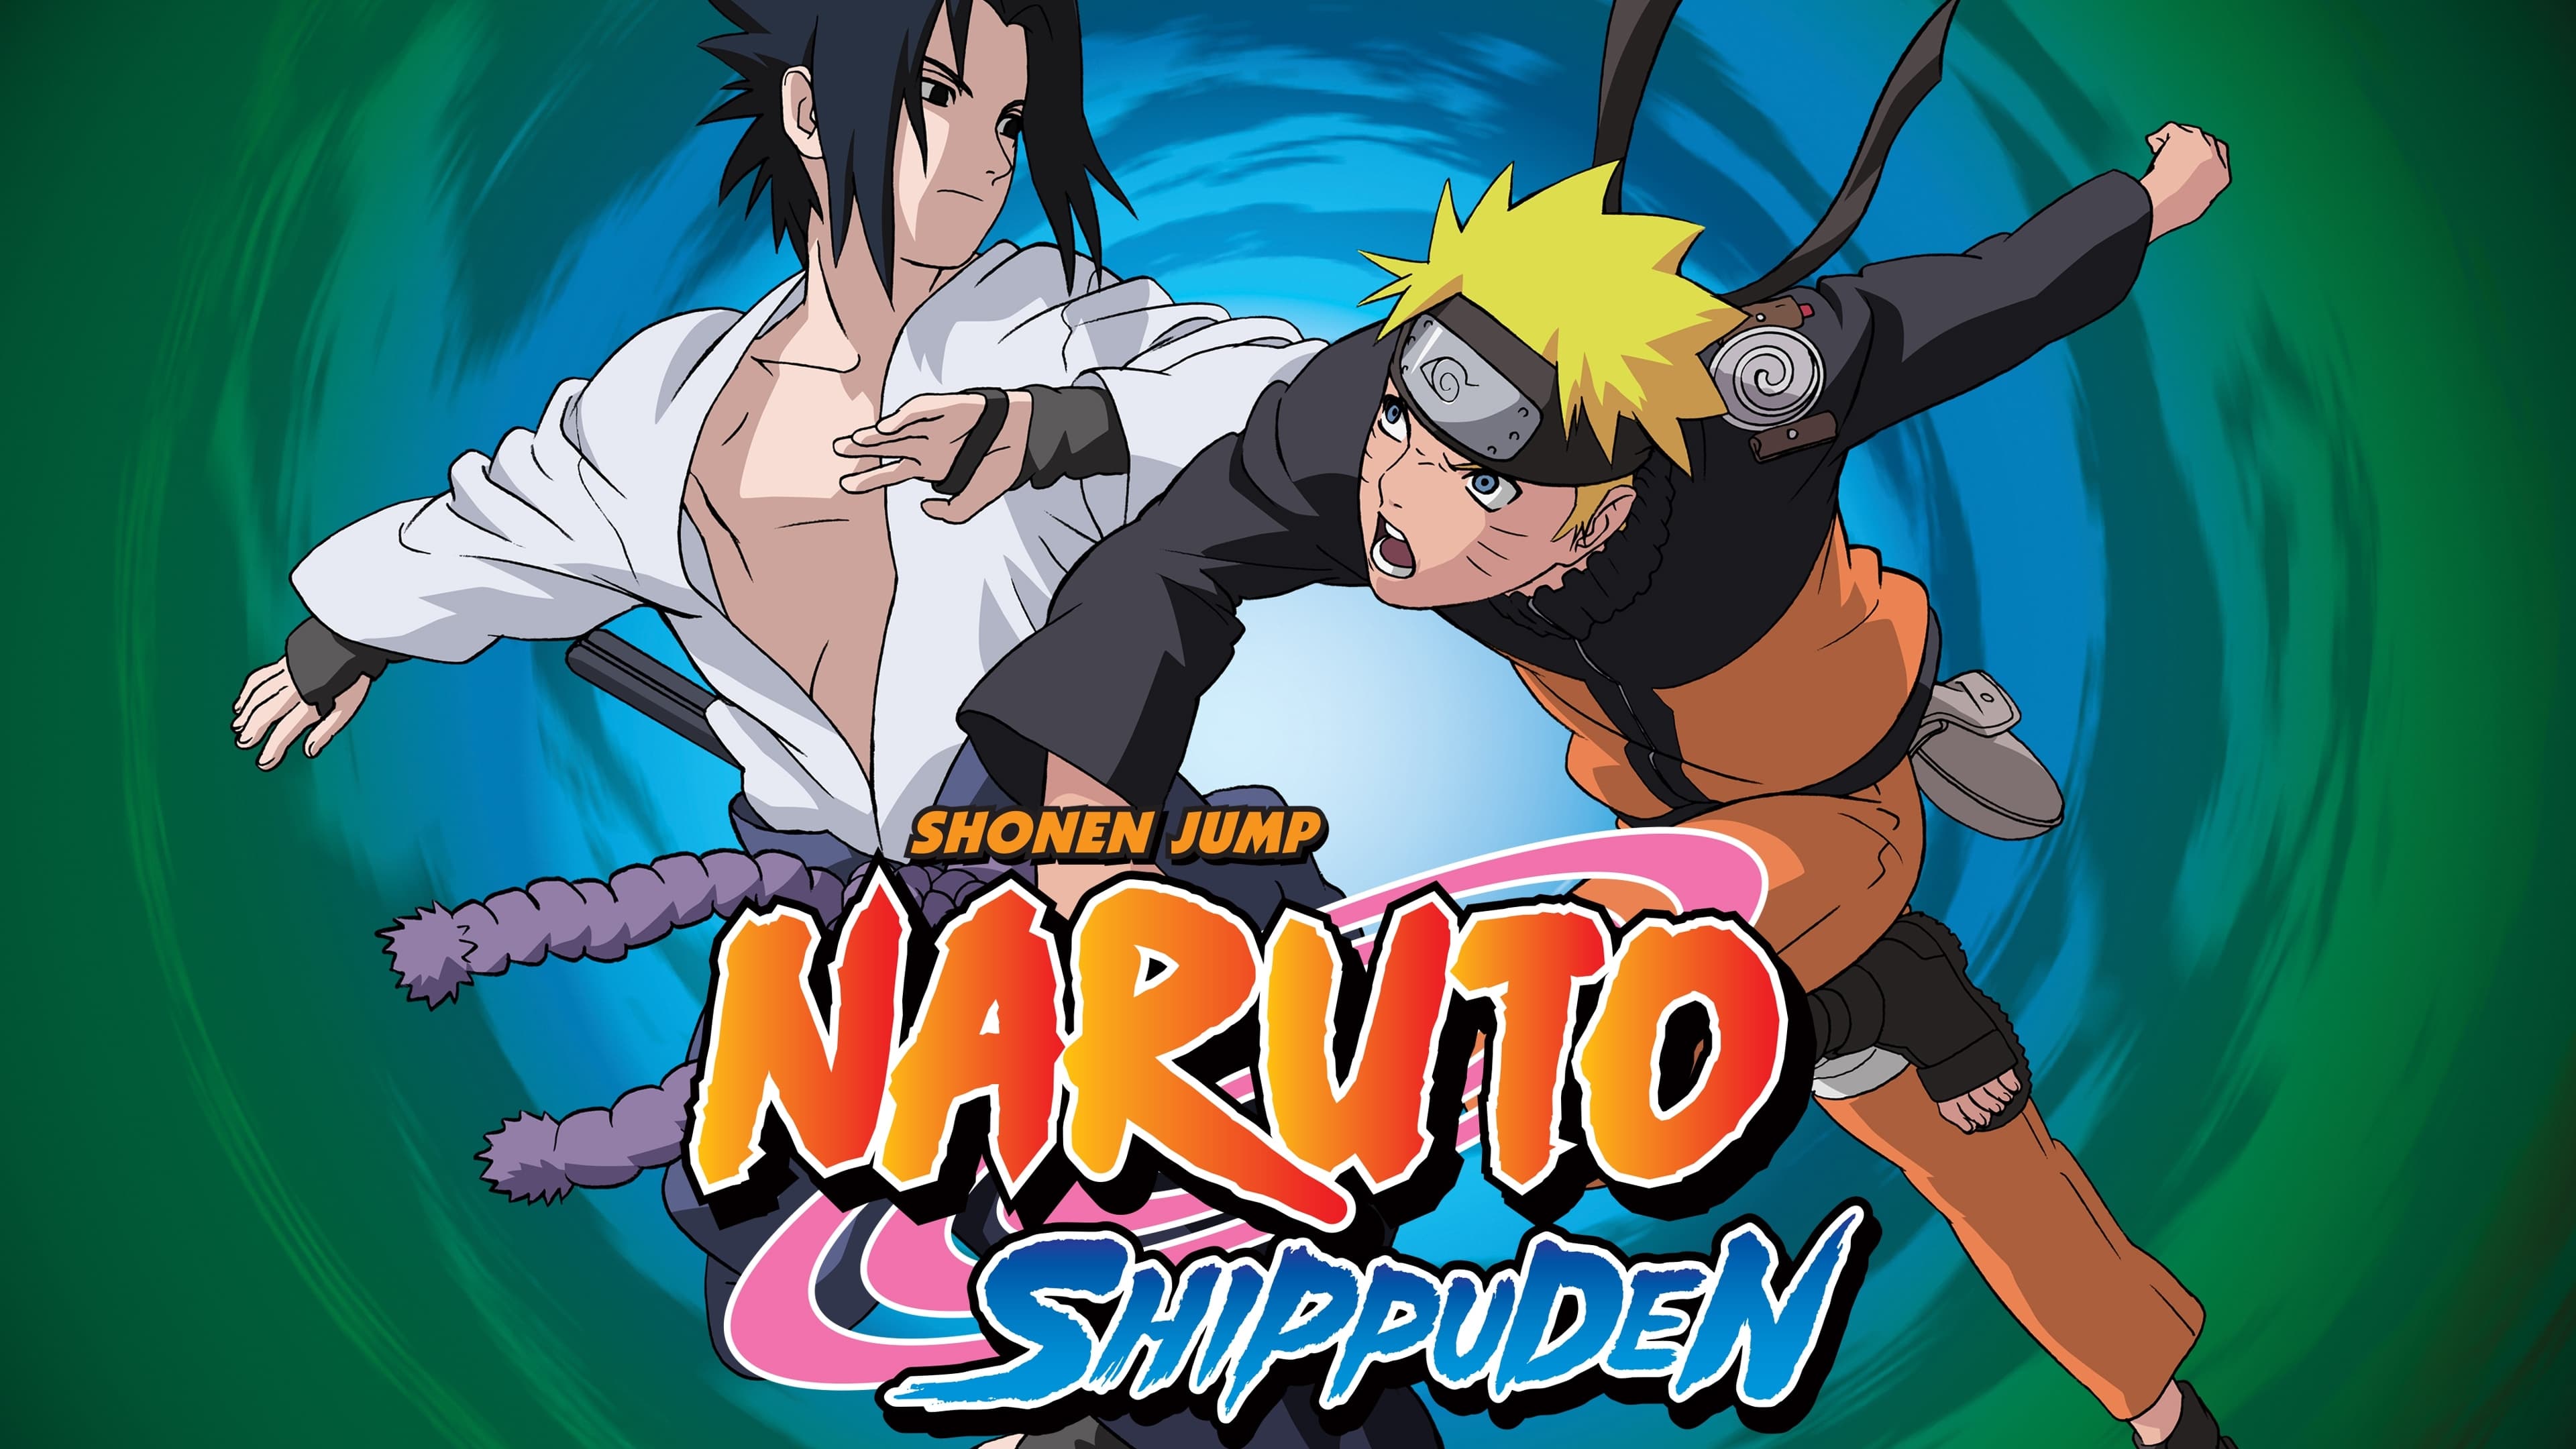 Naruto: Shippuden May Soon Receive a Hindi Dub